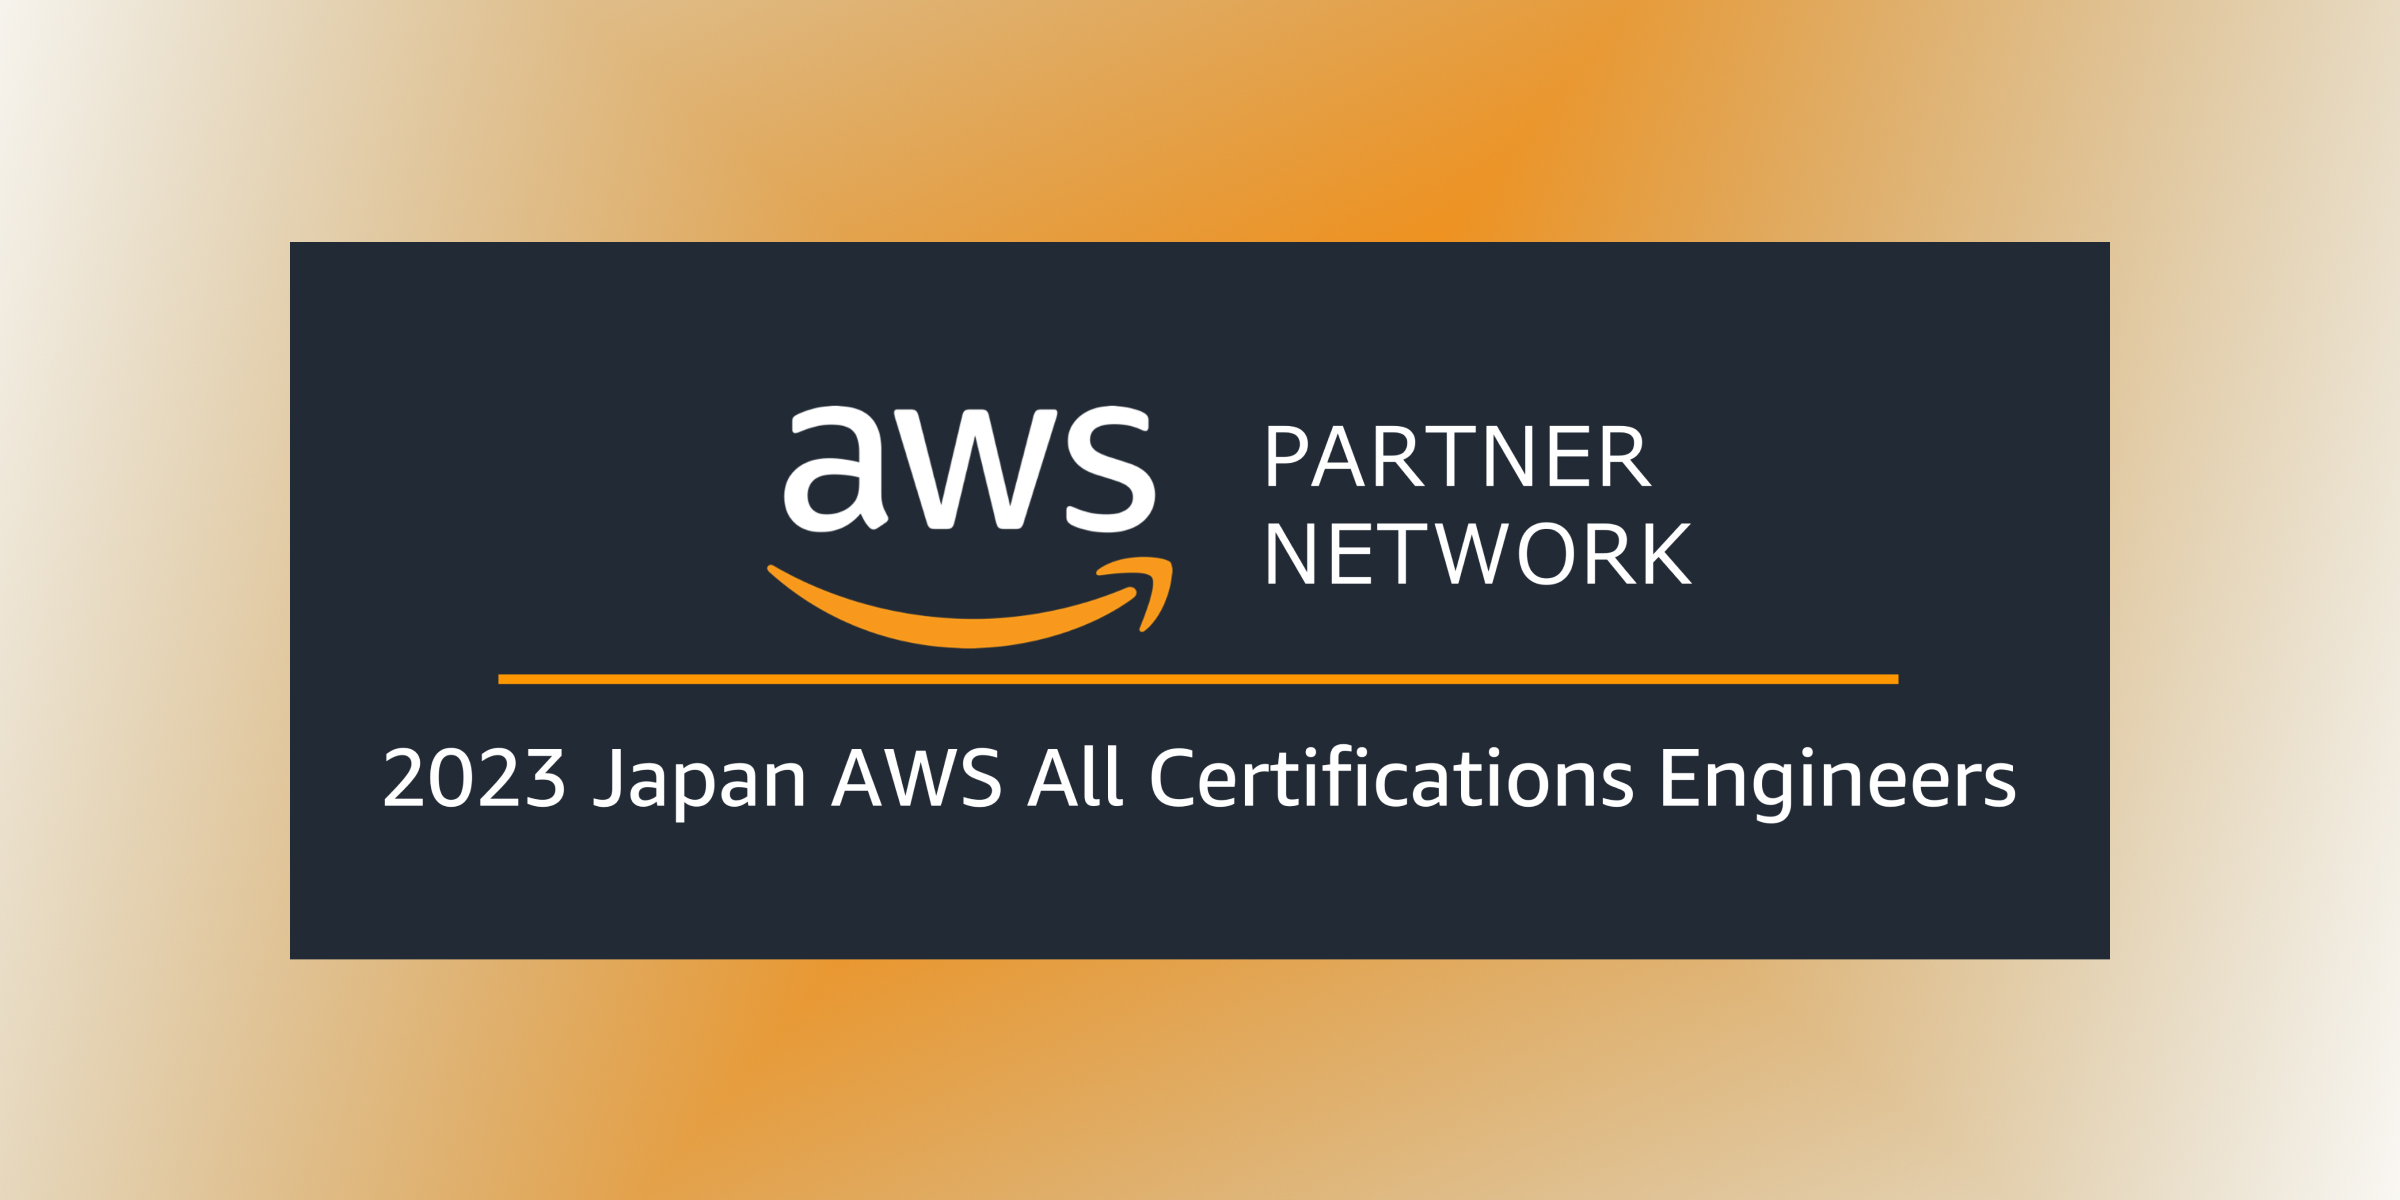 弊社所属の エンジニア５名 が「2023 Japan AWS All Certifications Engineers」に選出されました。